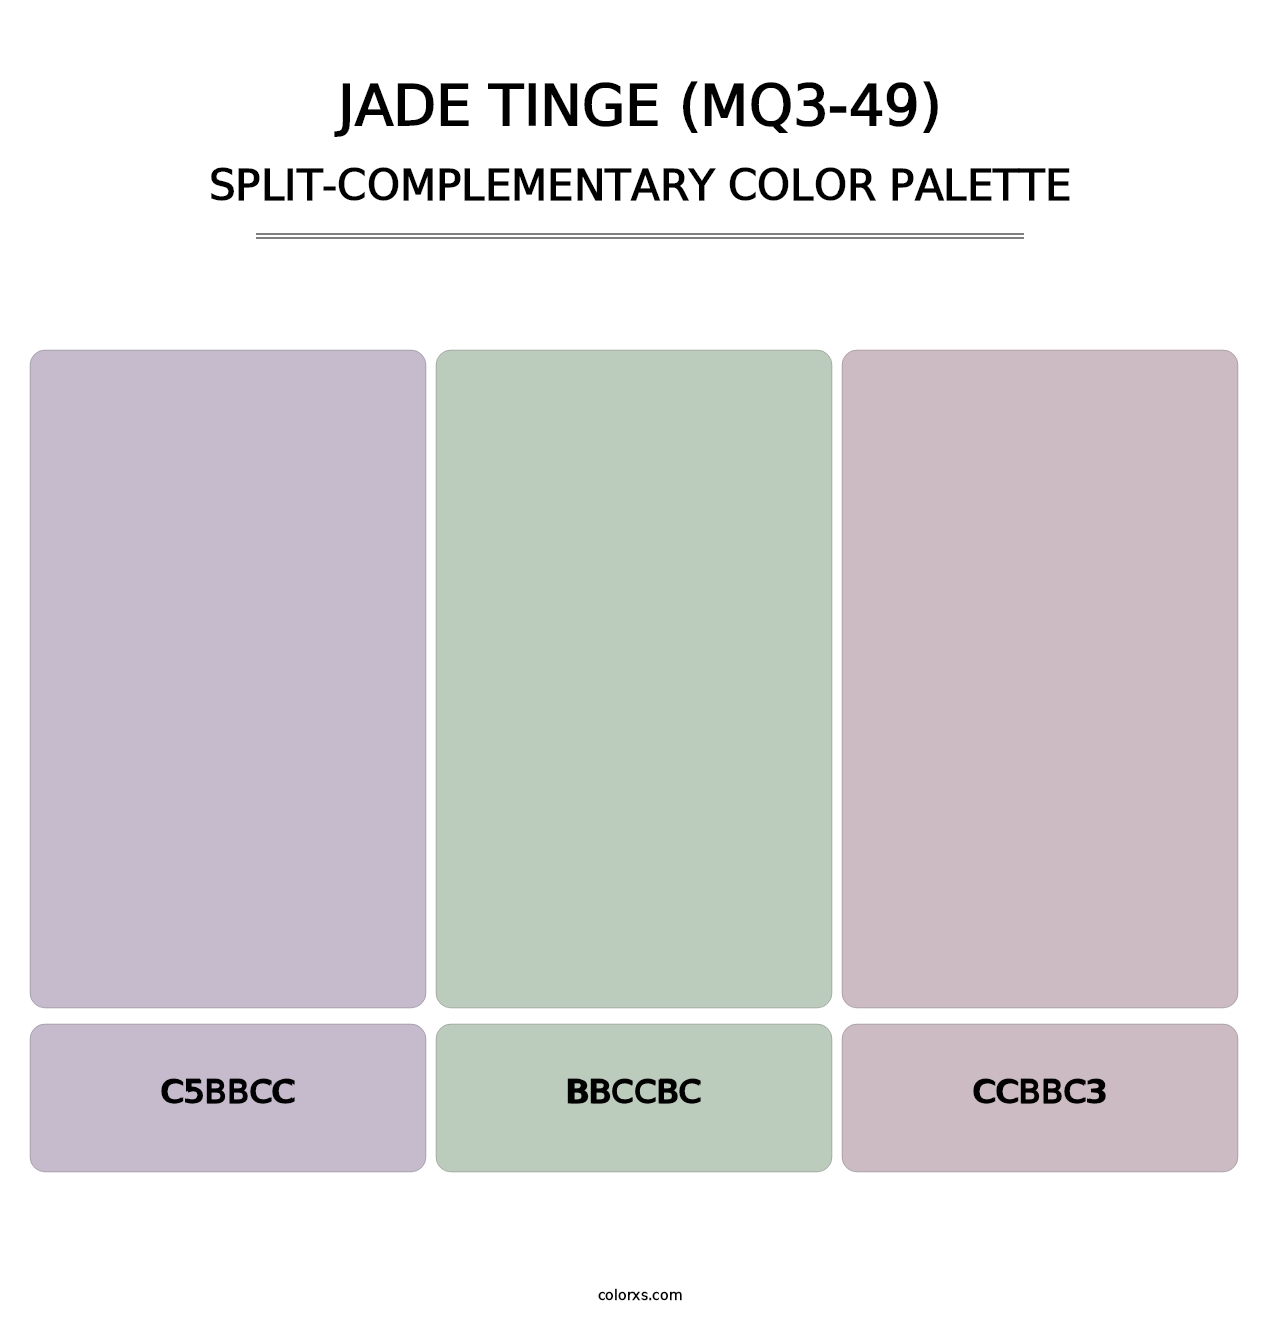 Jade Tinge (MQ3-49) - Split-Complementary Color Palette